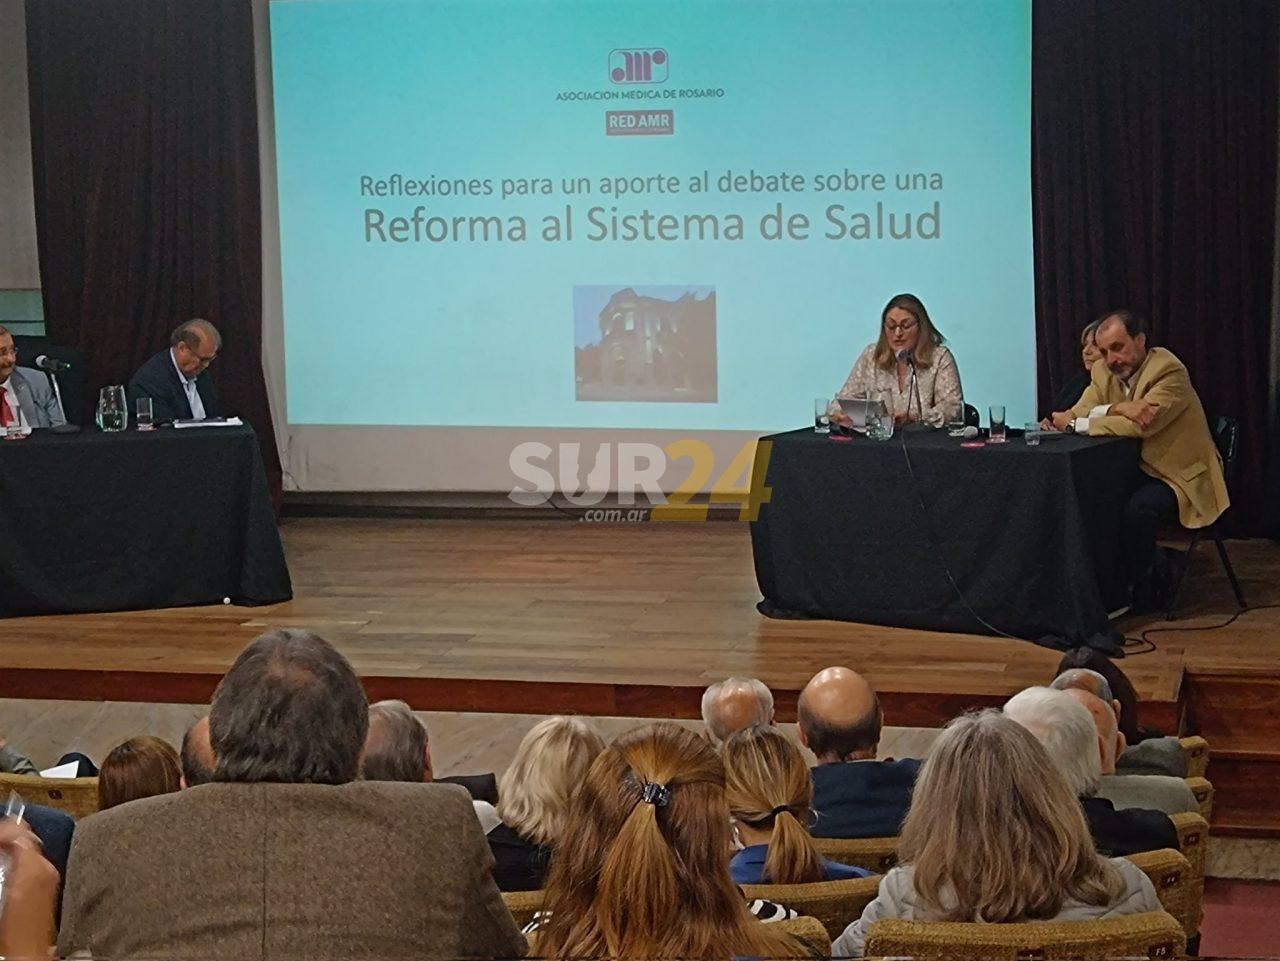 Se debate la reforma del sistema de salud argentino con el aporte de la diputada Ciancio